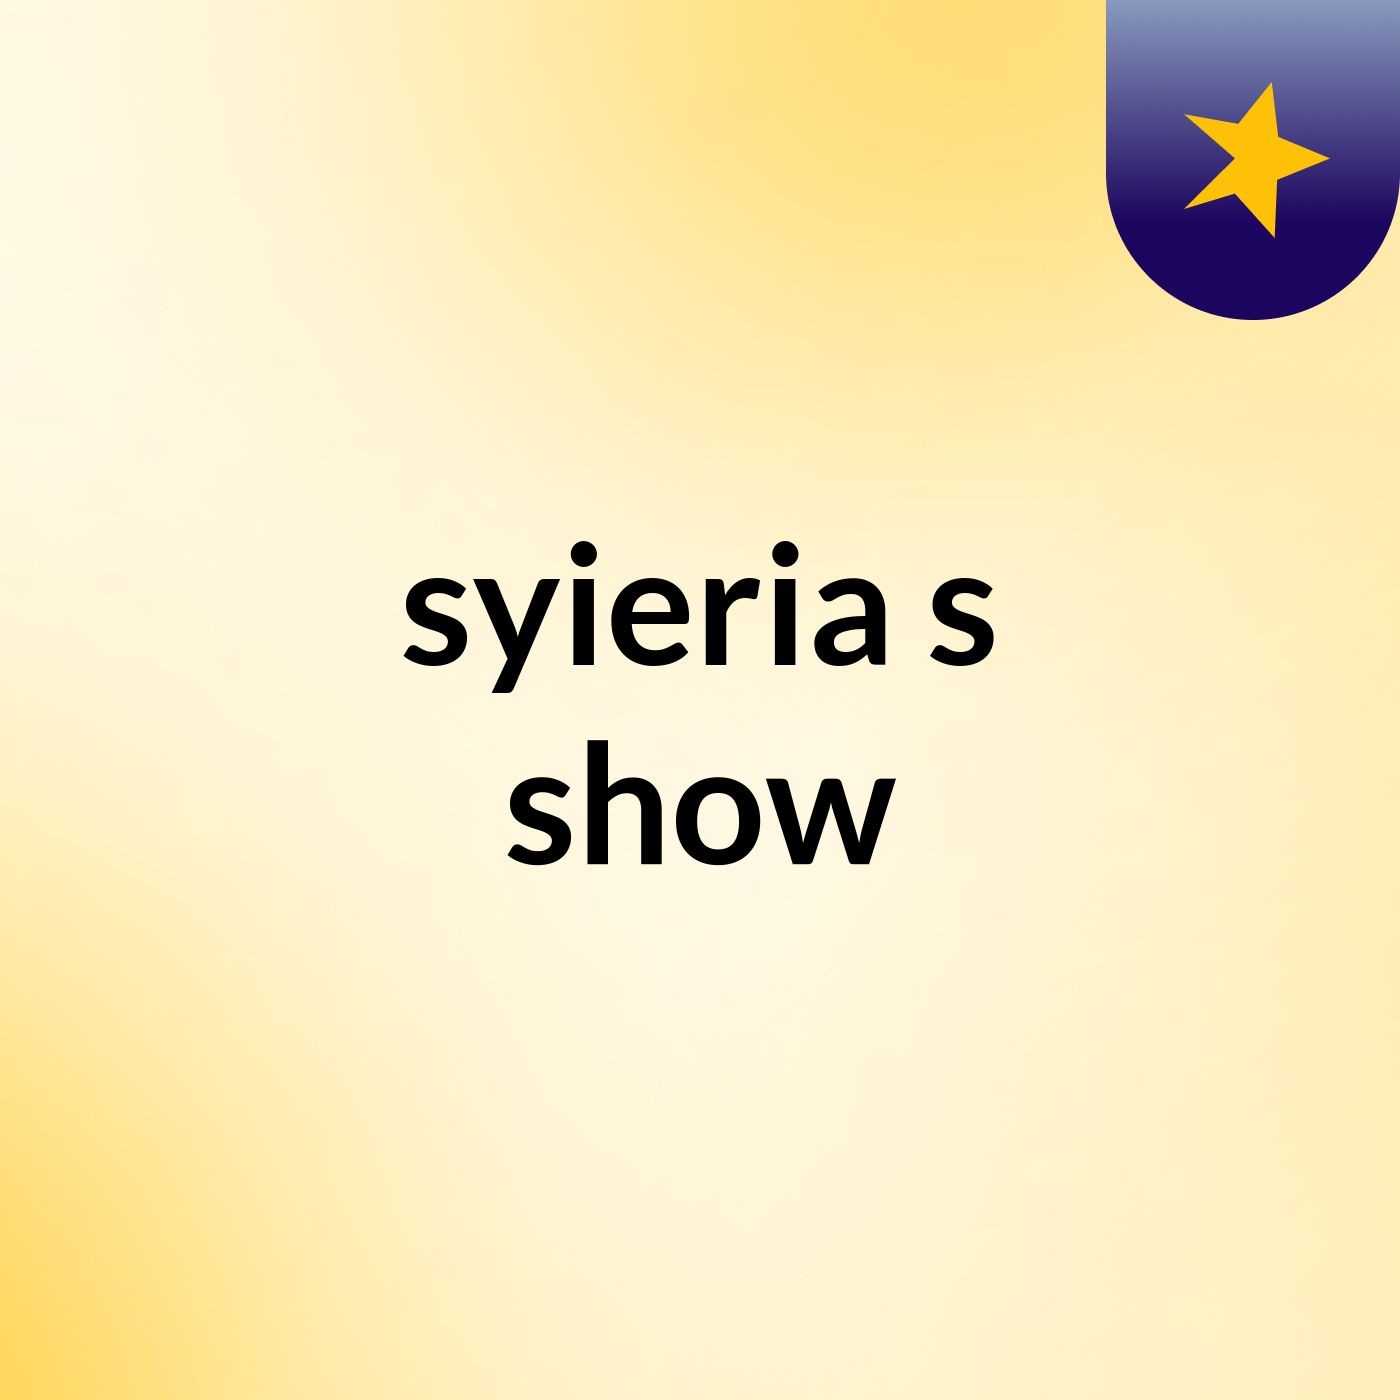 syieria's show